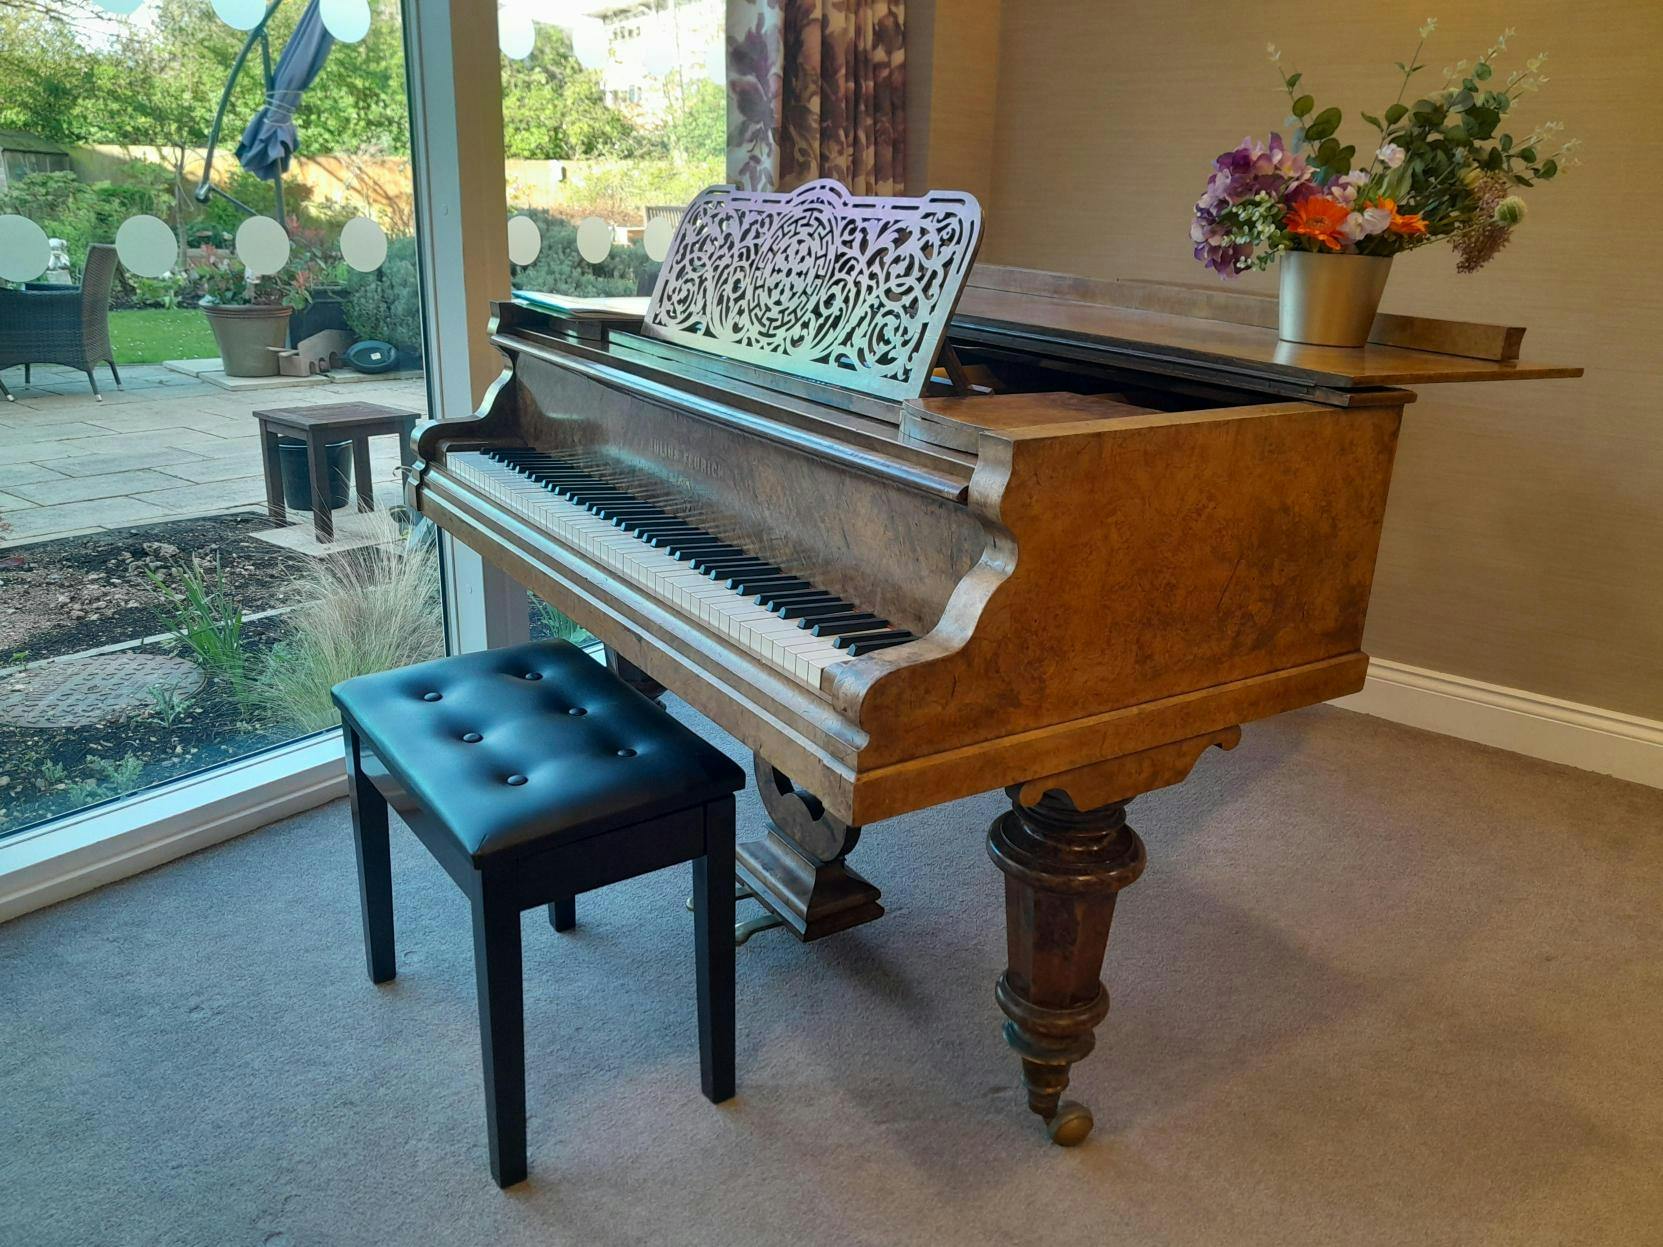 Piano of Cambridge Manor care home in Cambridge, Cambridgeshire